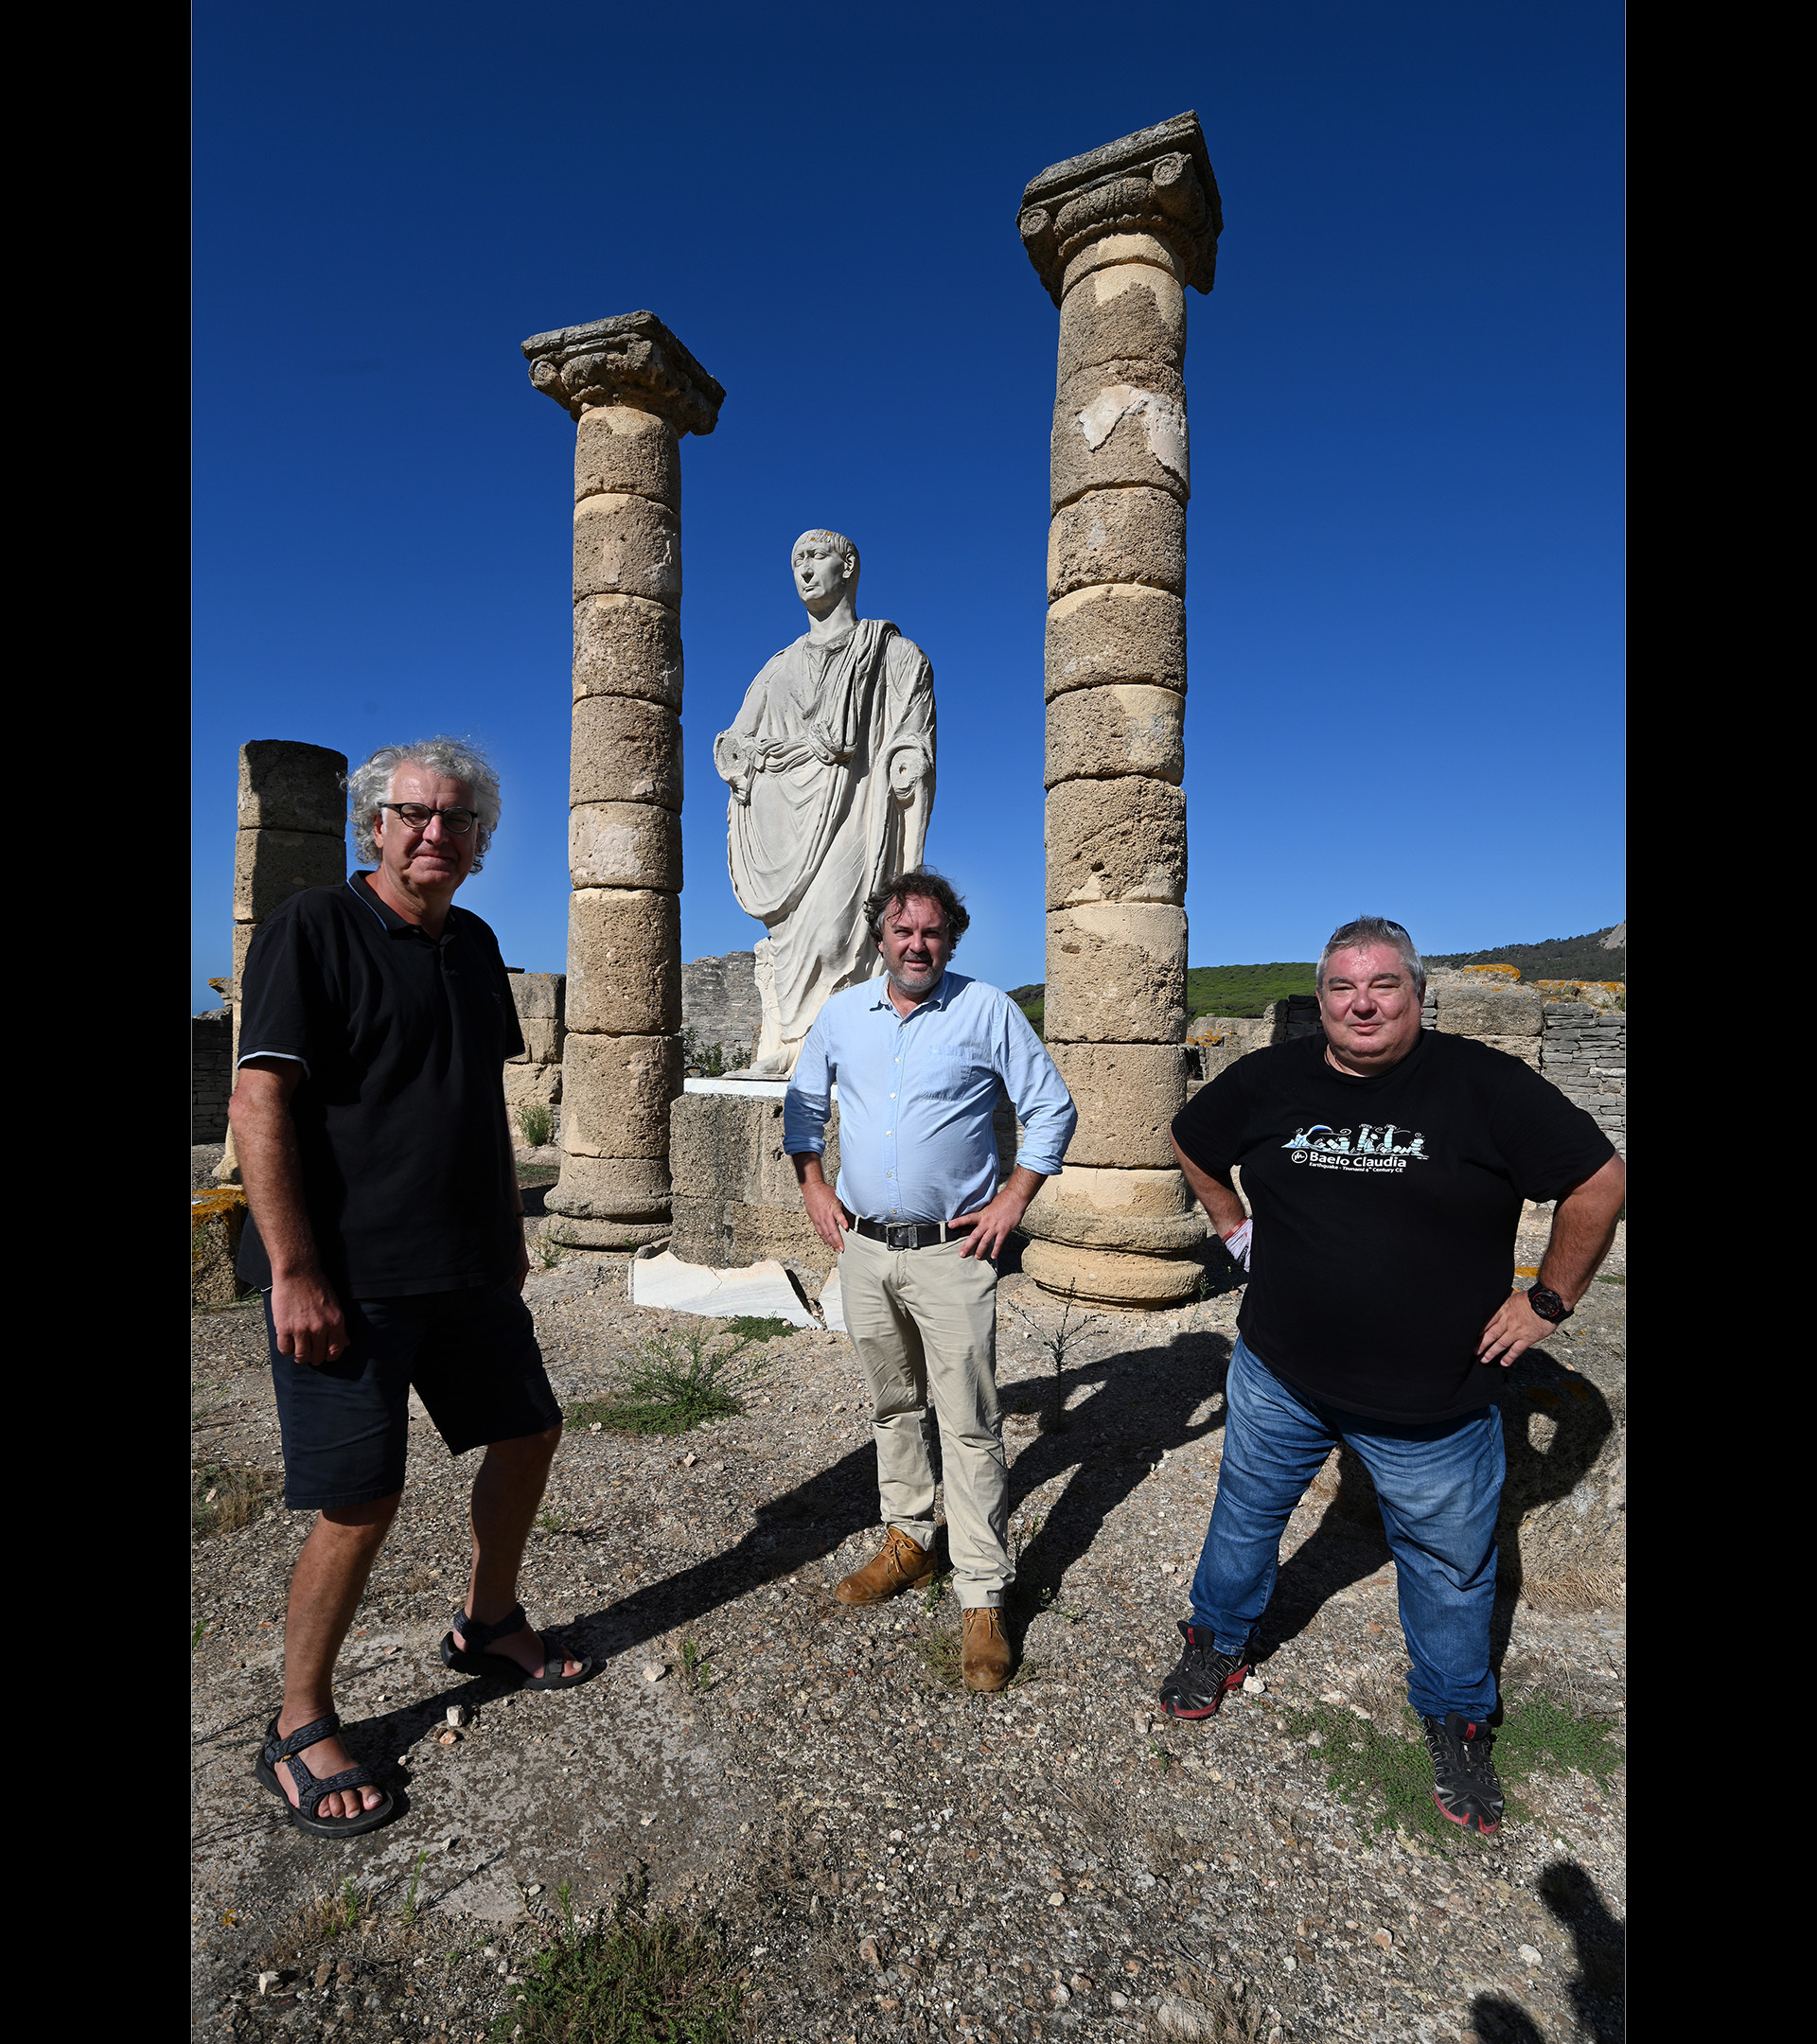 De izquierda a derecha: Klaus Reicherter, Ivn Garca Jimnez y Pablo Gabriel Silva junto a la estatua de Trajano